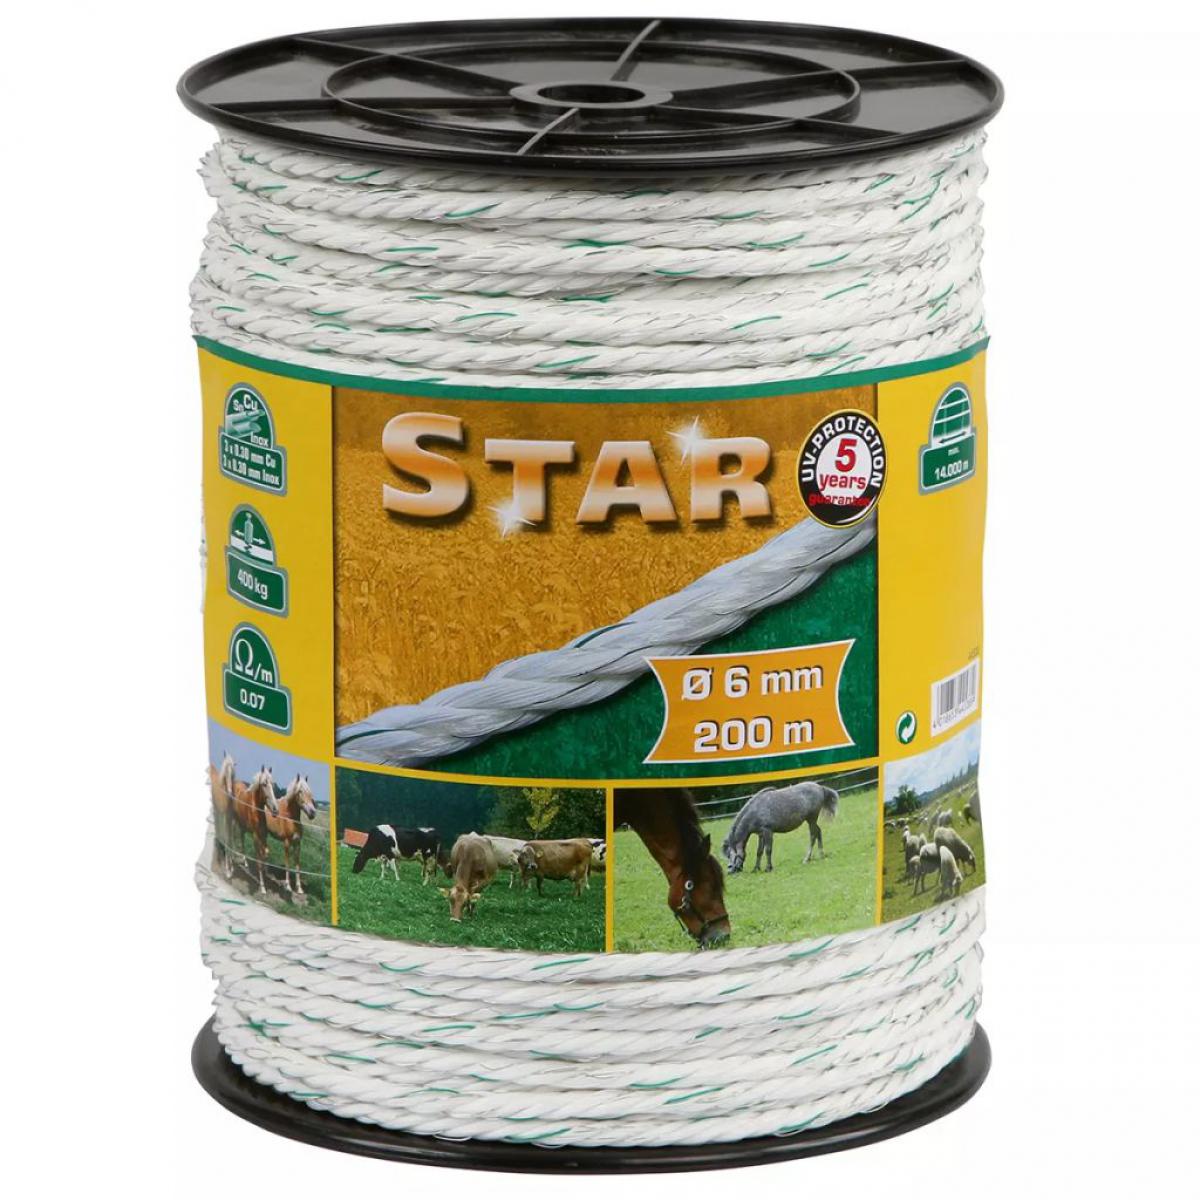 Kerbl - Kerbl Corde pour clôture électrique Star 200 m blanc-vert 6 mm 44538 - Portillon